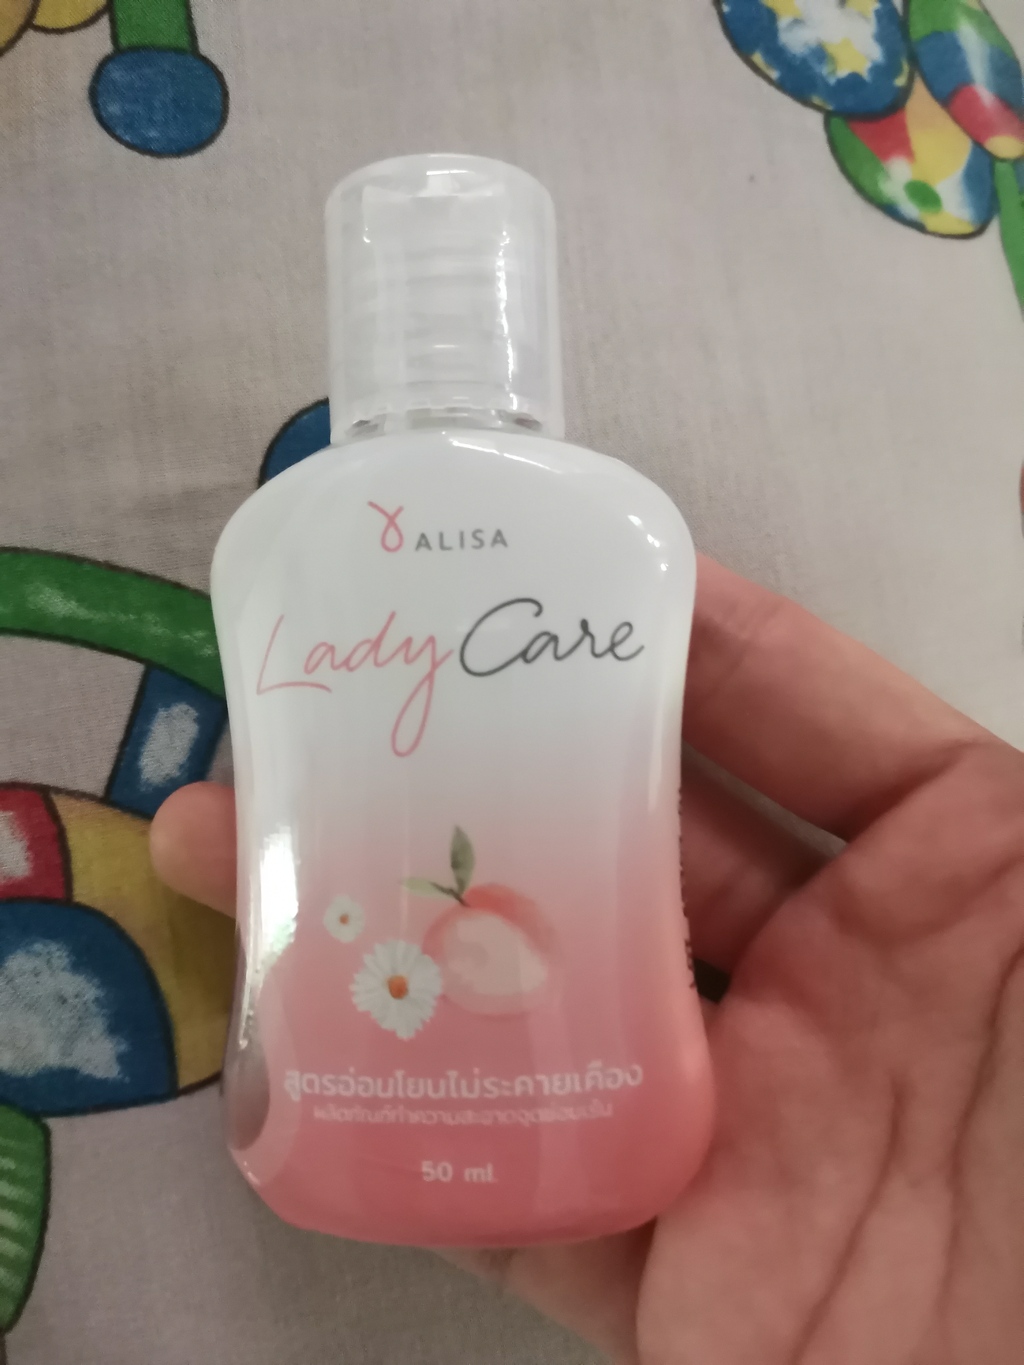 ALISA Lady Care ผลิตภัณฑ์ทำความสะอาดจุดซ่อนเร้น รีวิว